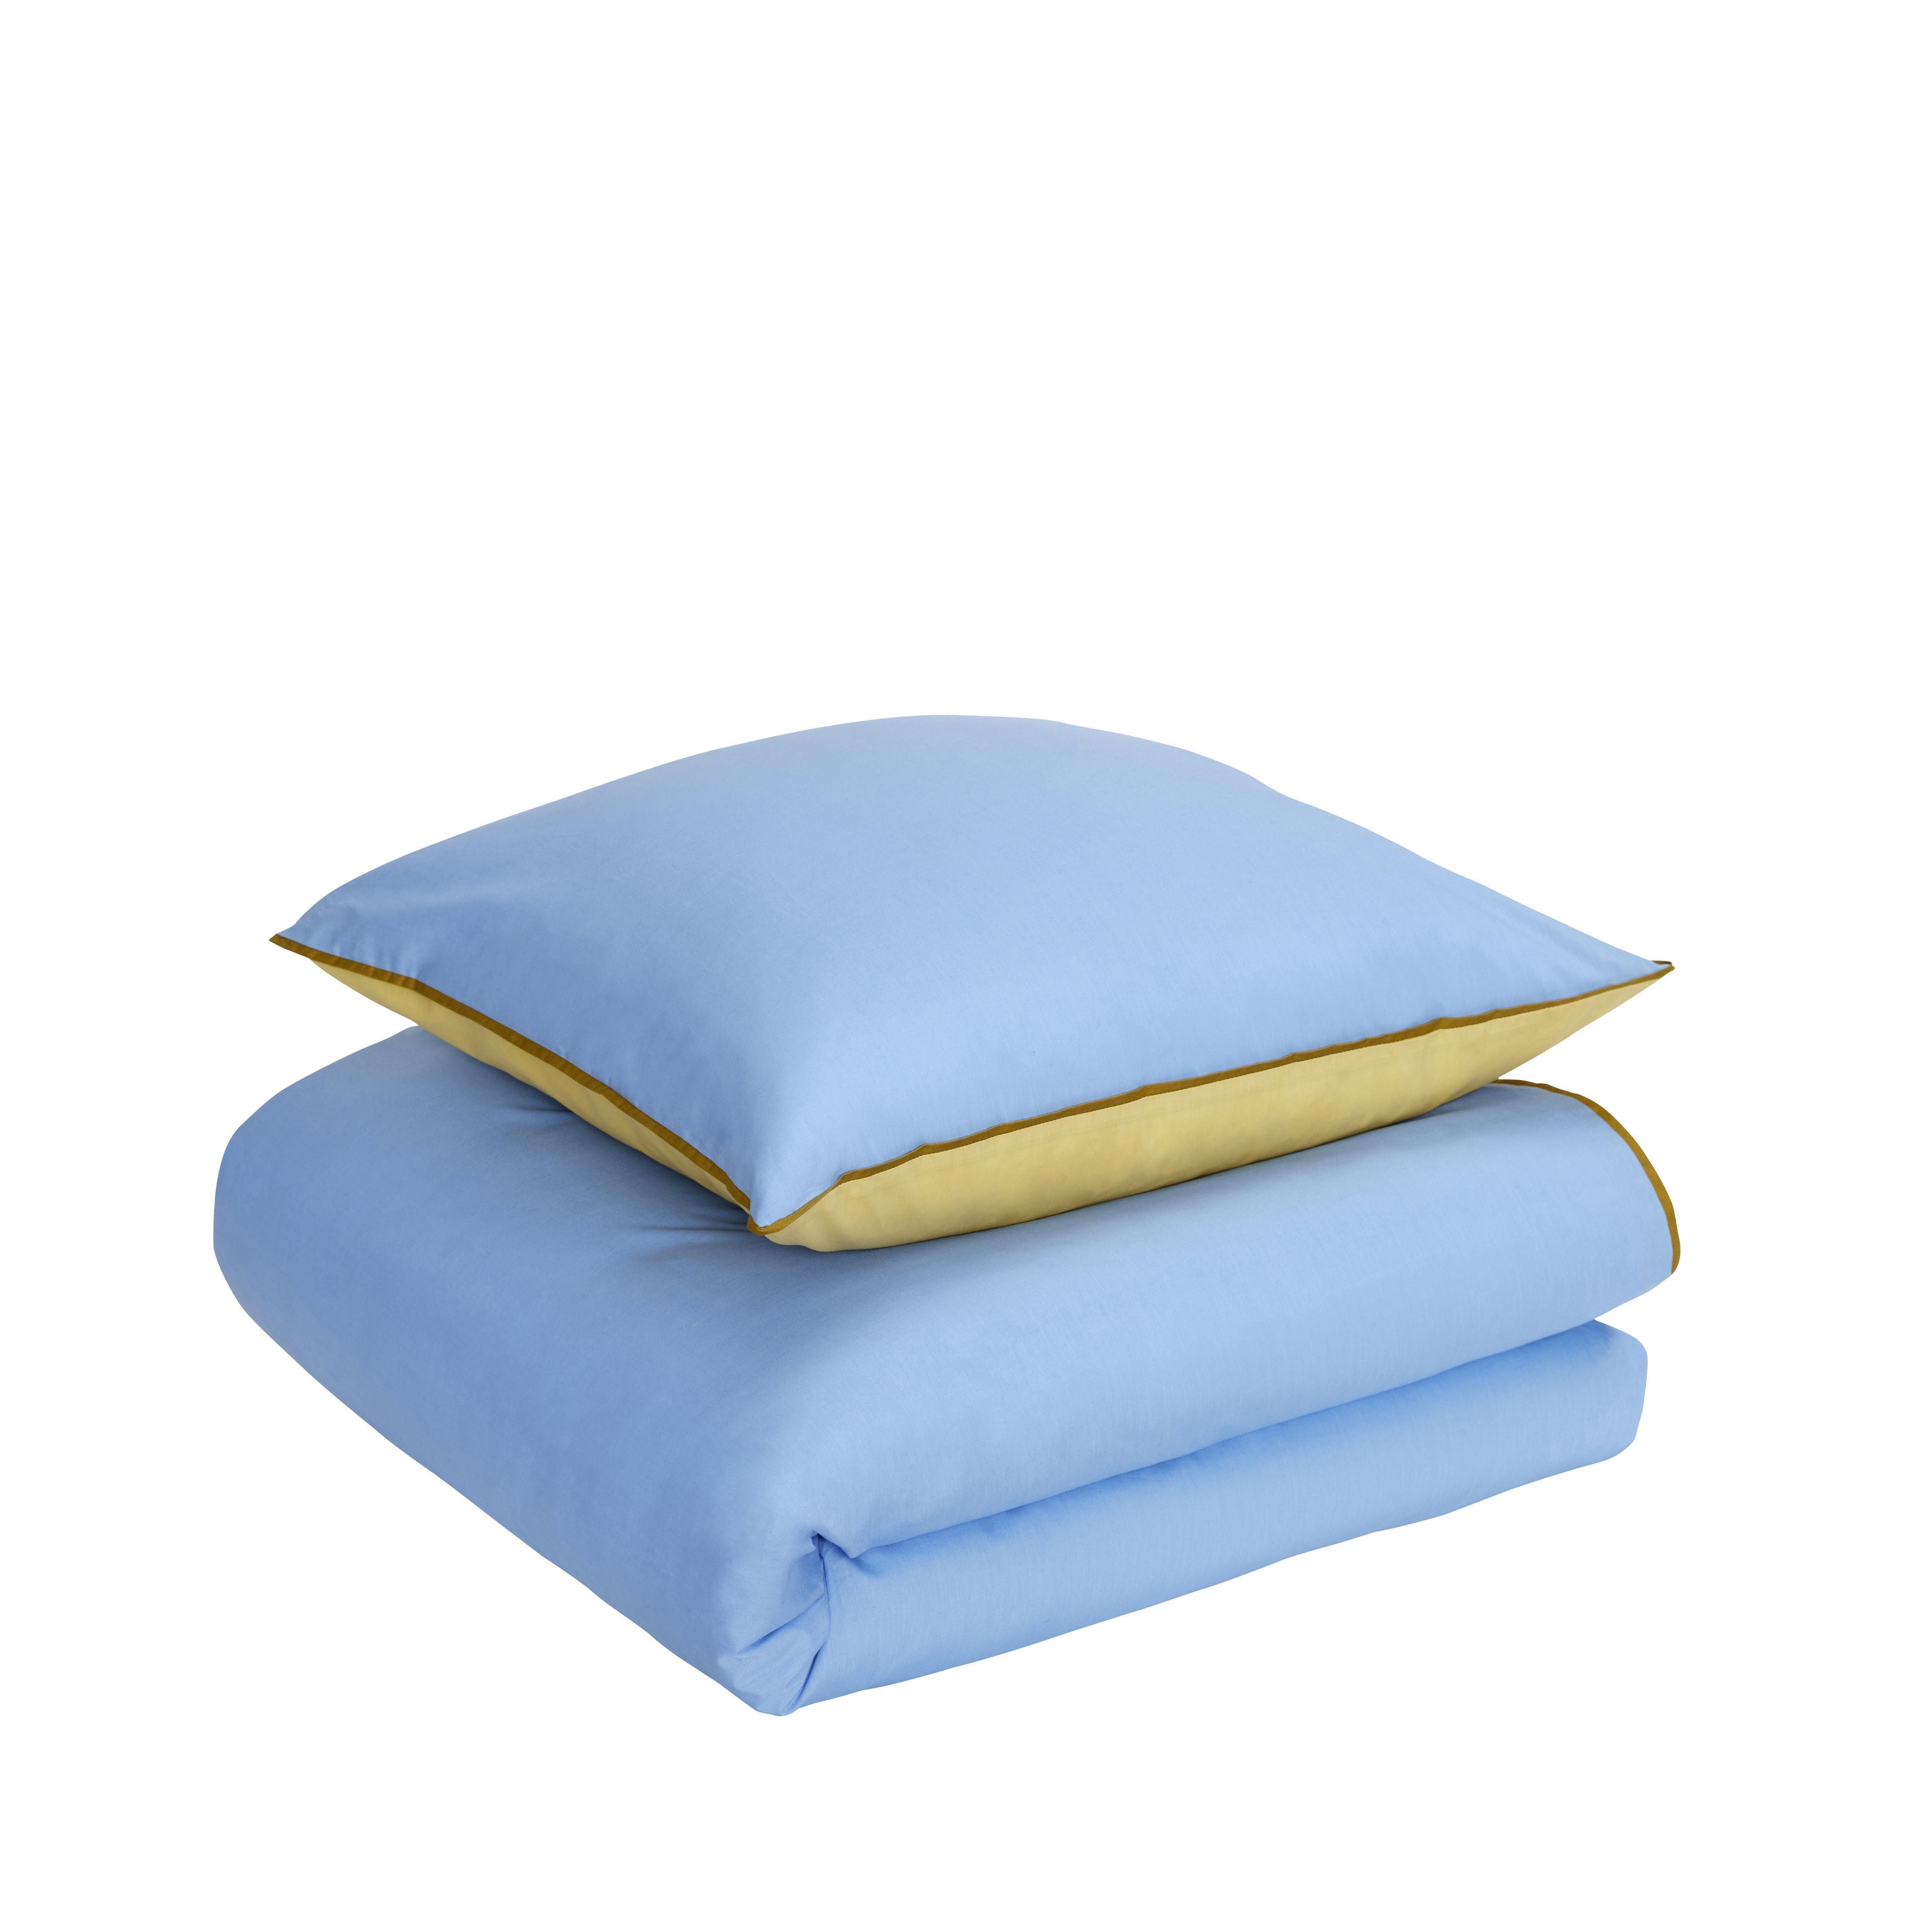 Hübsch aki sängkläder 80/200, blå/gul